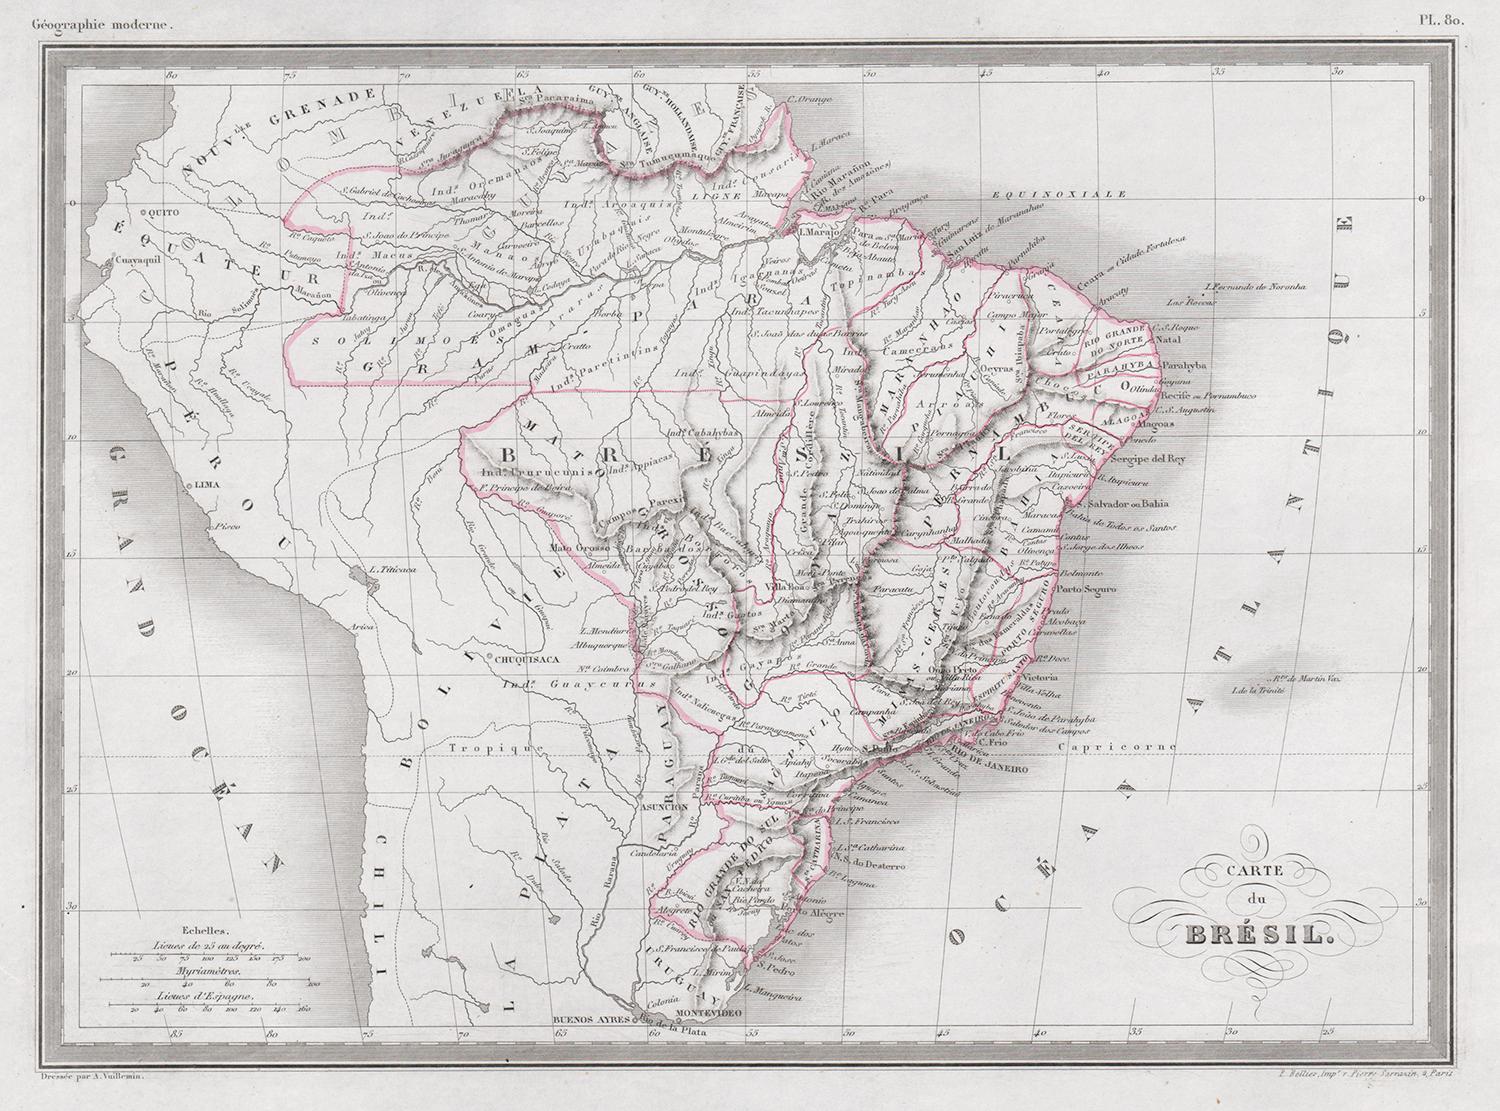 Carte du Bresil, antike, gravierte Landkarte von Brasilien aus den 1860er Jahren